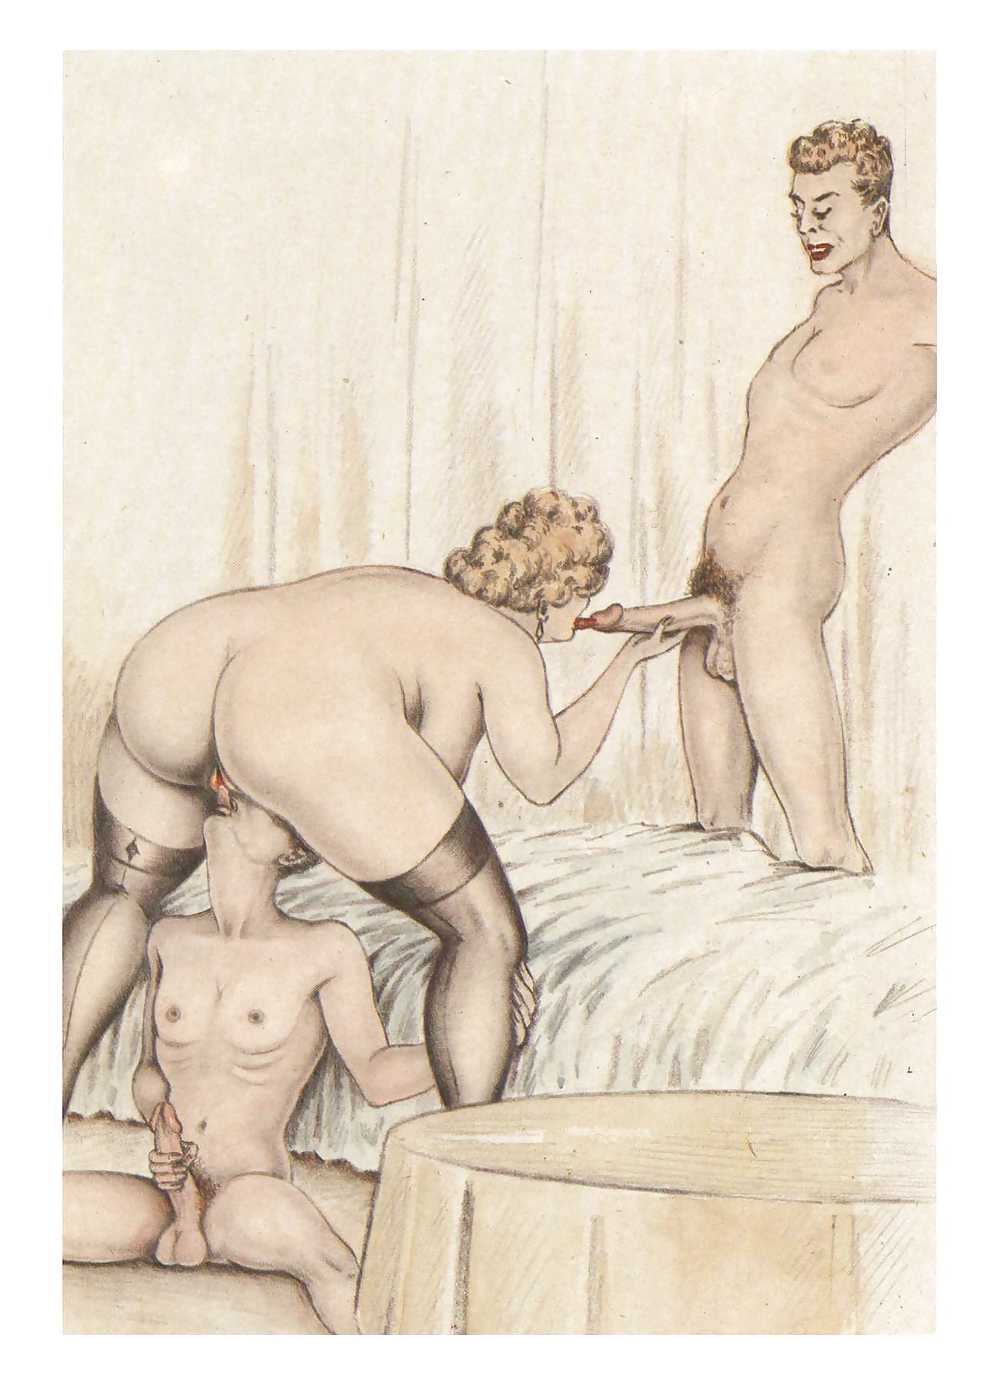 Erotische Vintage Zeichnungen Porno Bilder Sex Fotos Xxx Bilder 